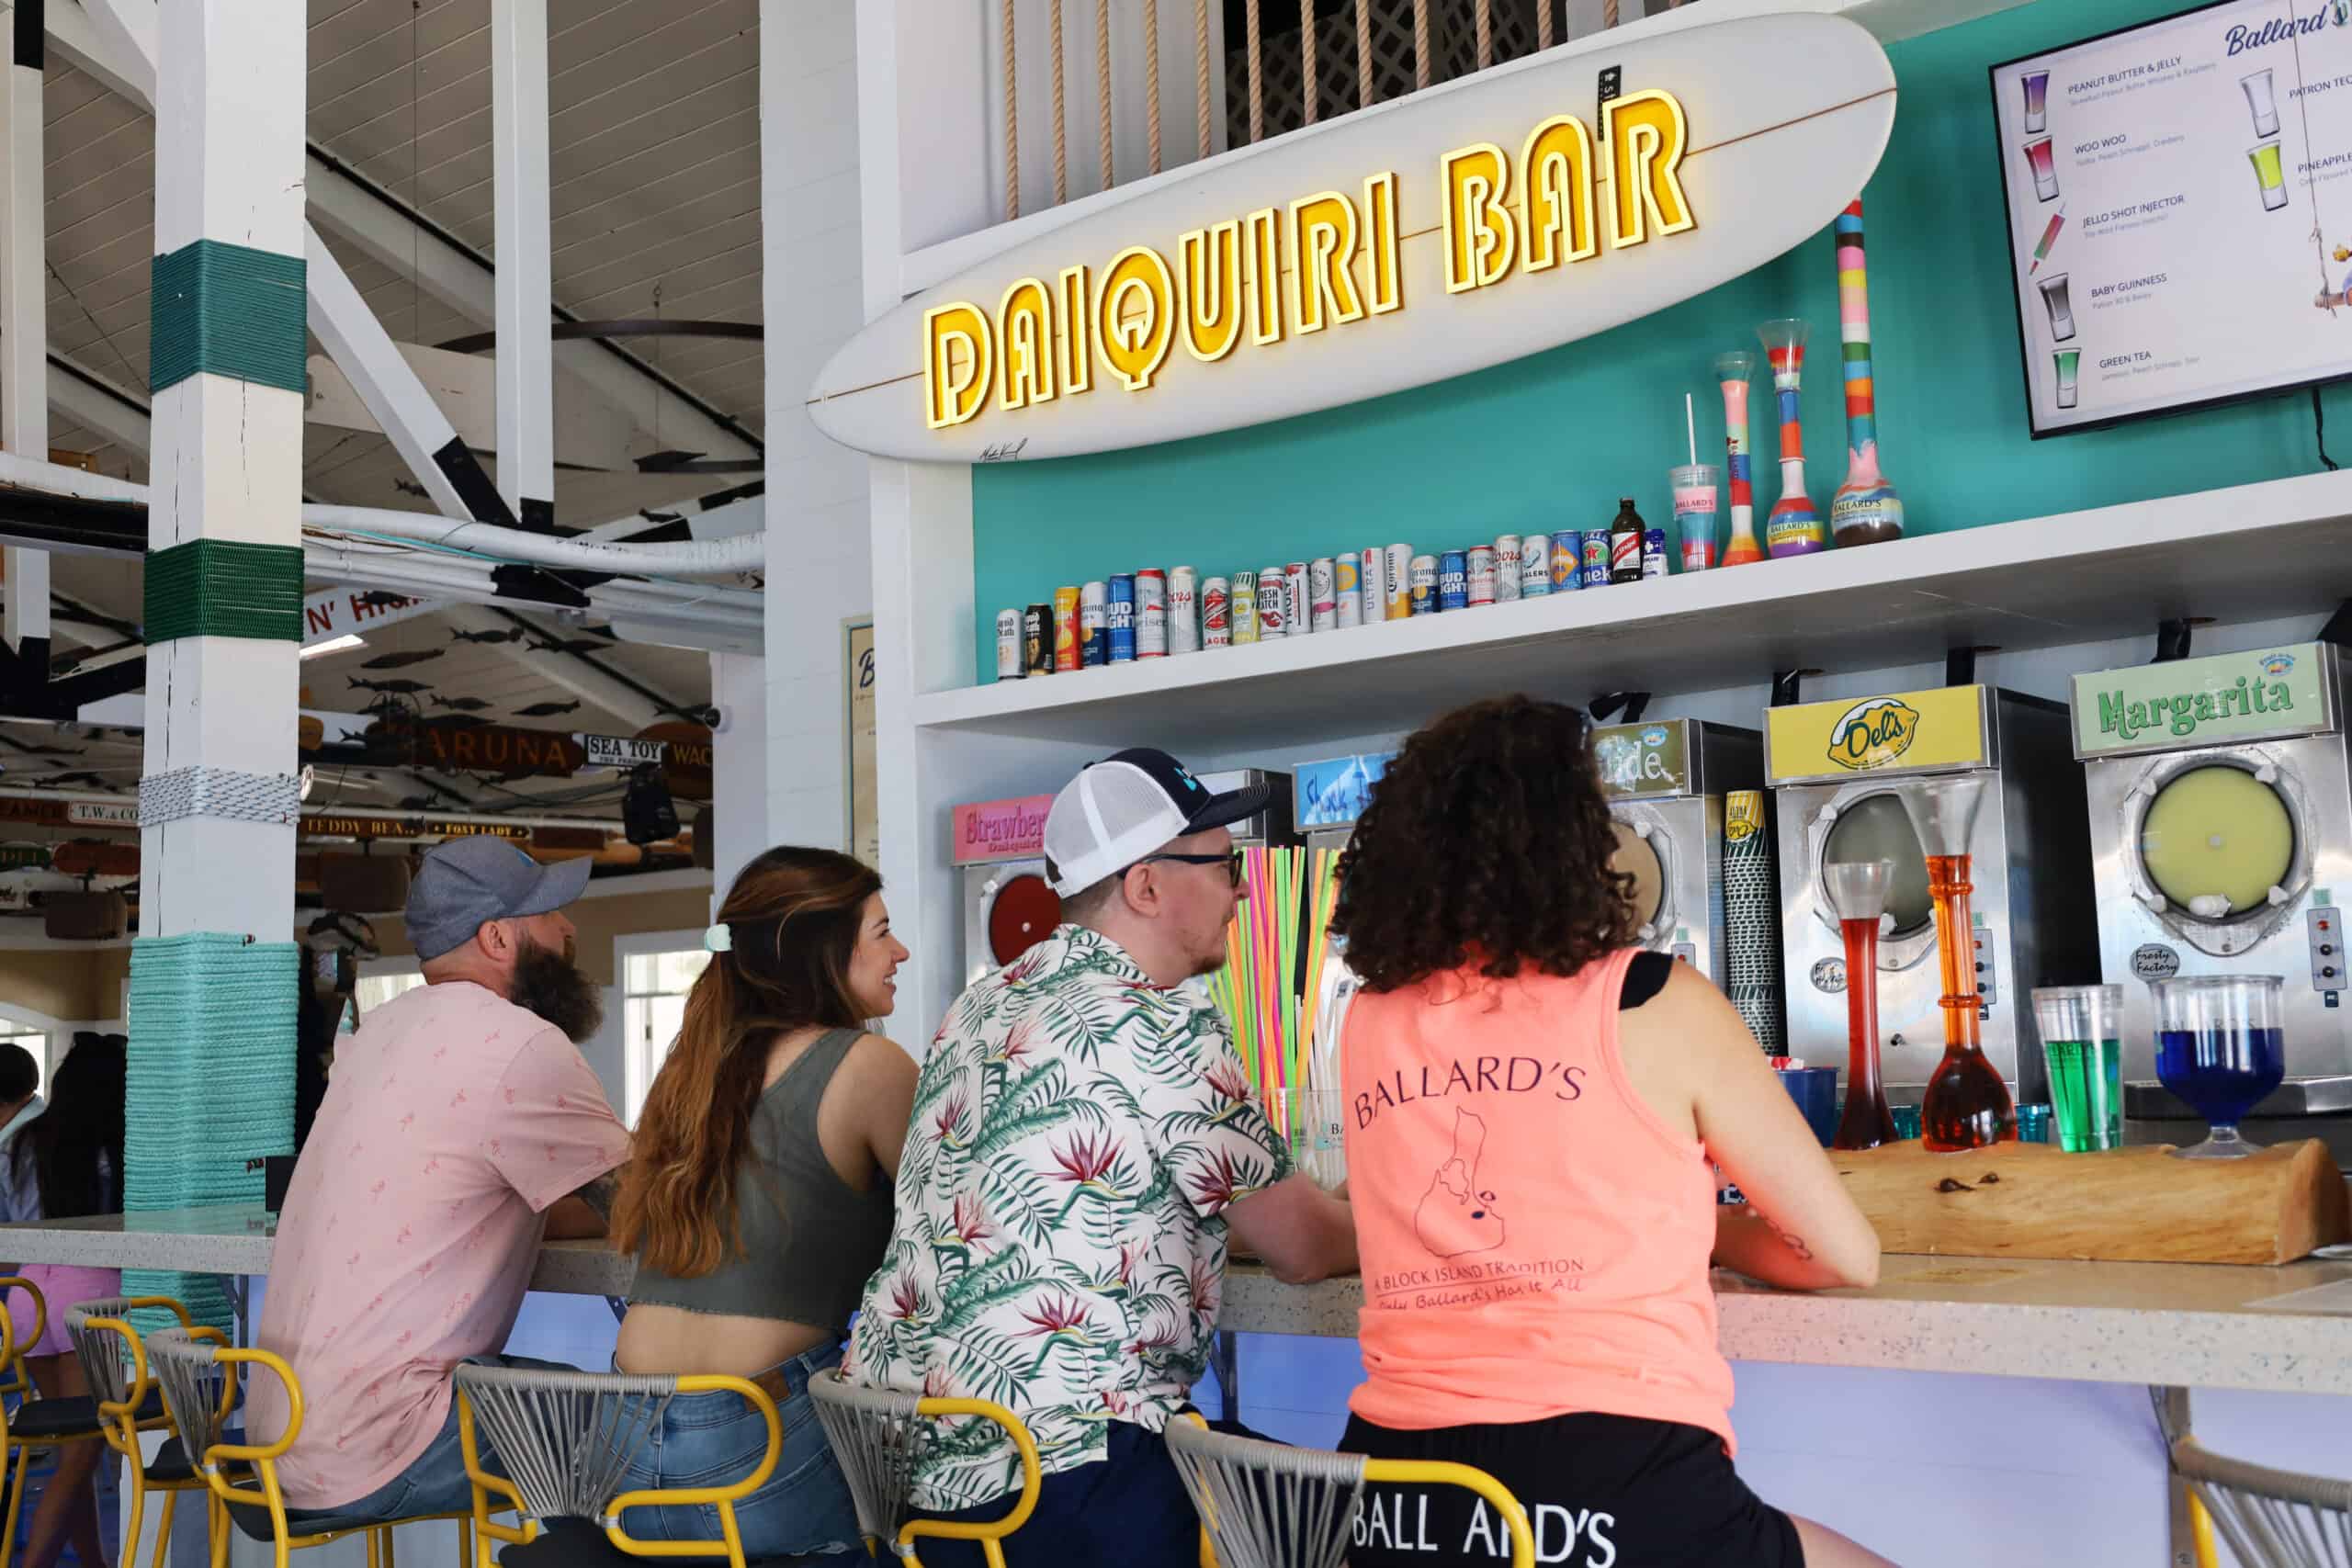 The Daquiri Bar at Ballards